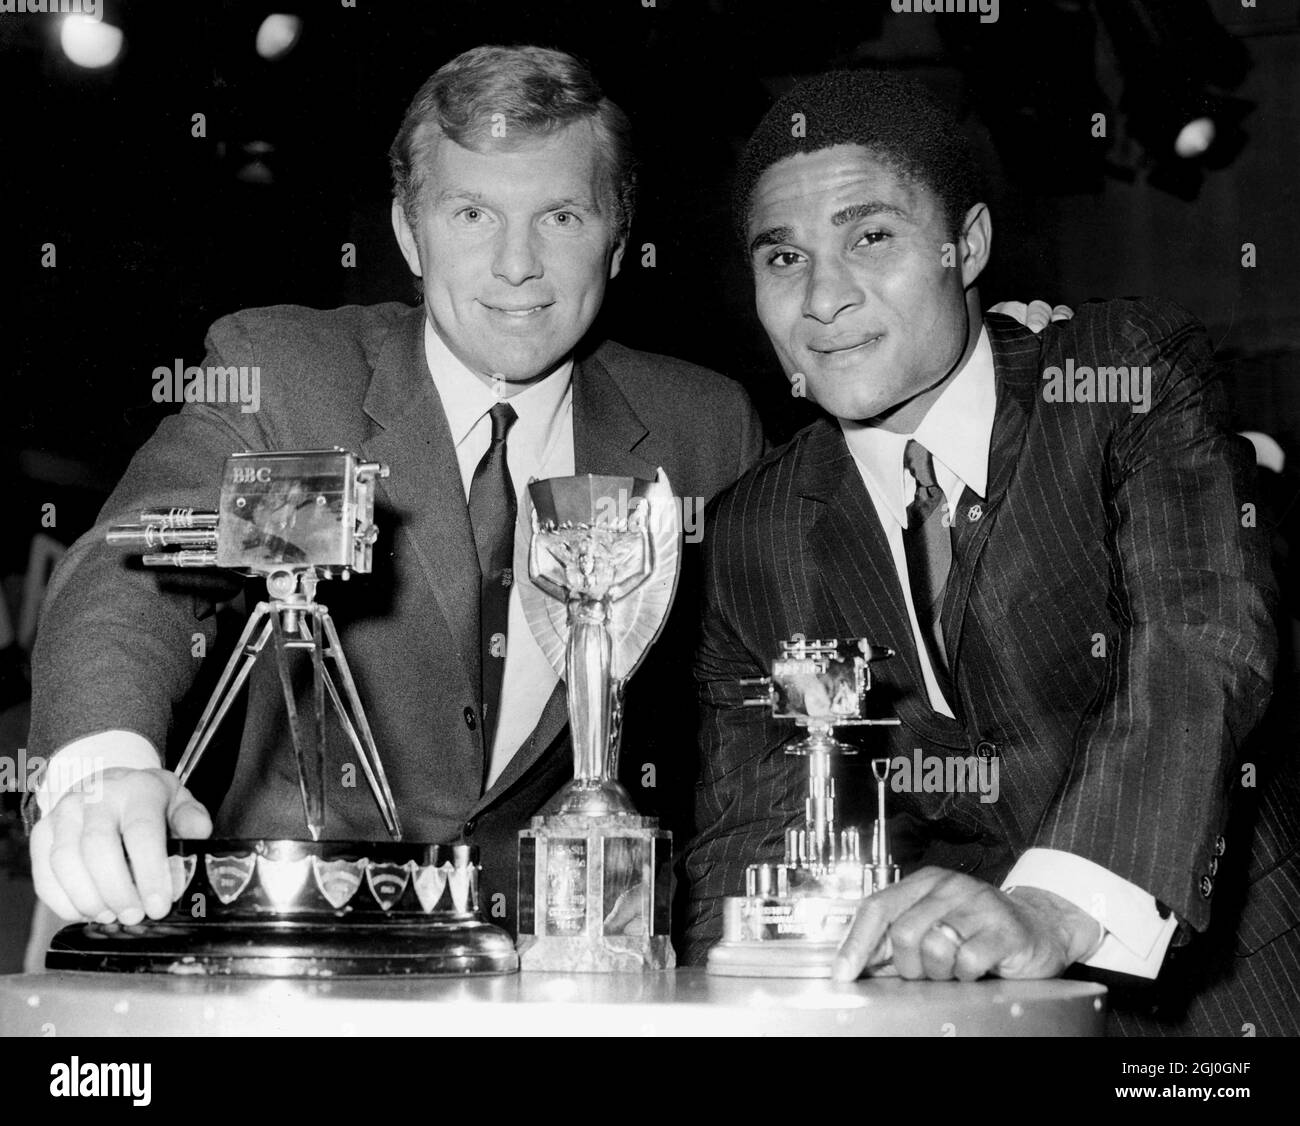 1966 Sportpersönlichkeit des Jahres. Zwei internationale Top-Fußballer gewinnen die BBC-Sportpersönlichkeit des Jahres. Der englische Kapitän, Booby Moore (links) und der Portugiesen Eusebio, wurden bei der Zeremonie ausgezeichnet. Dezember 1966 Stockfoto